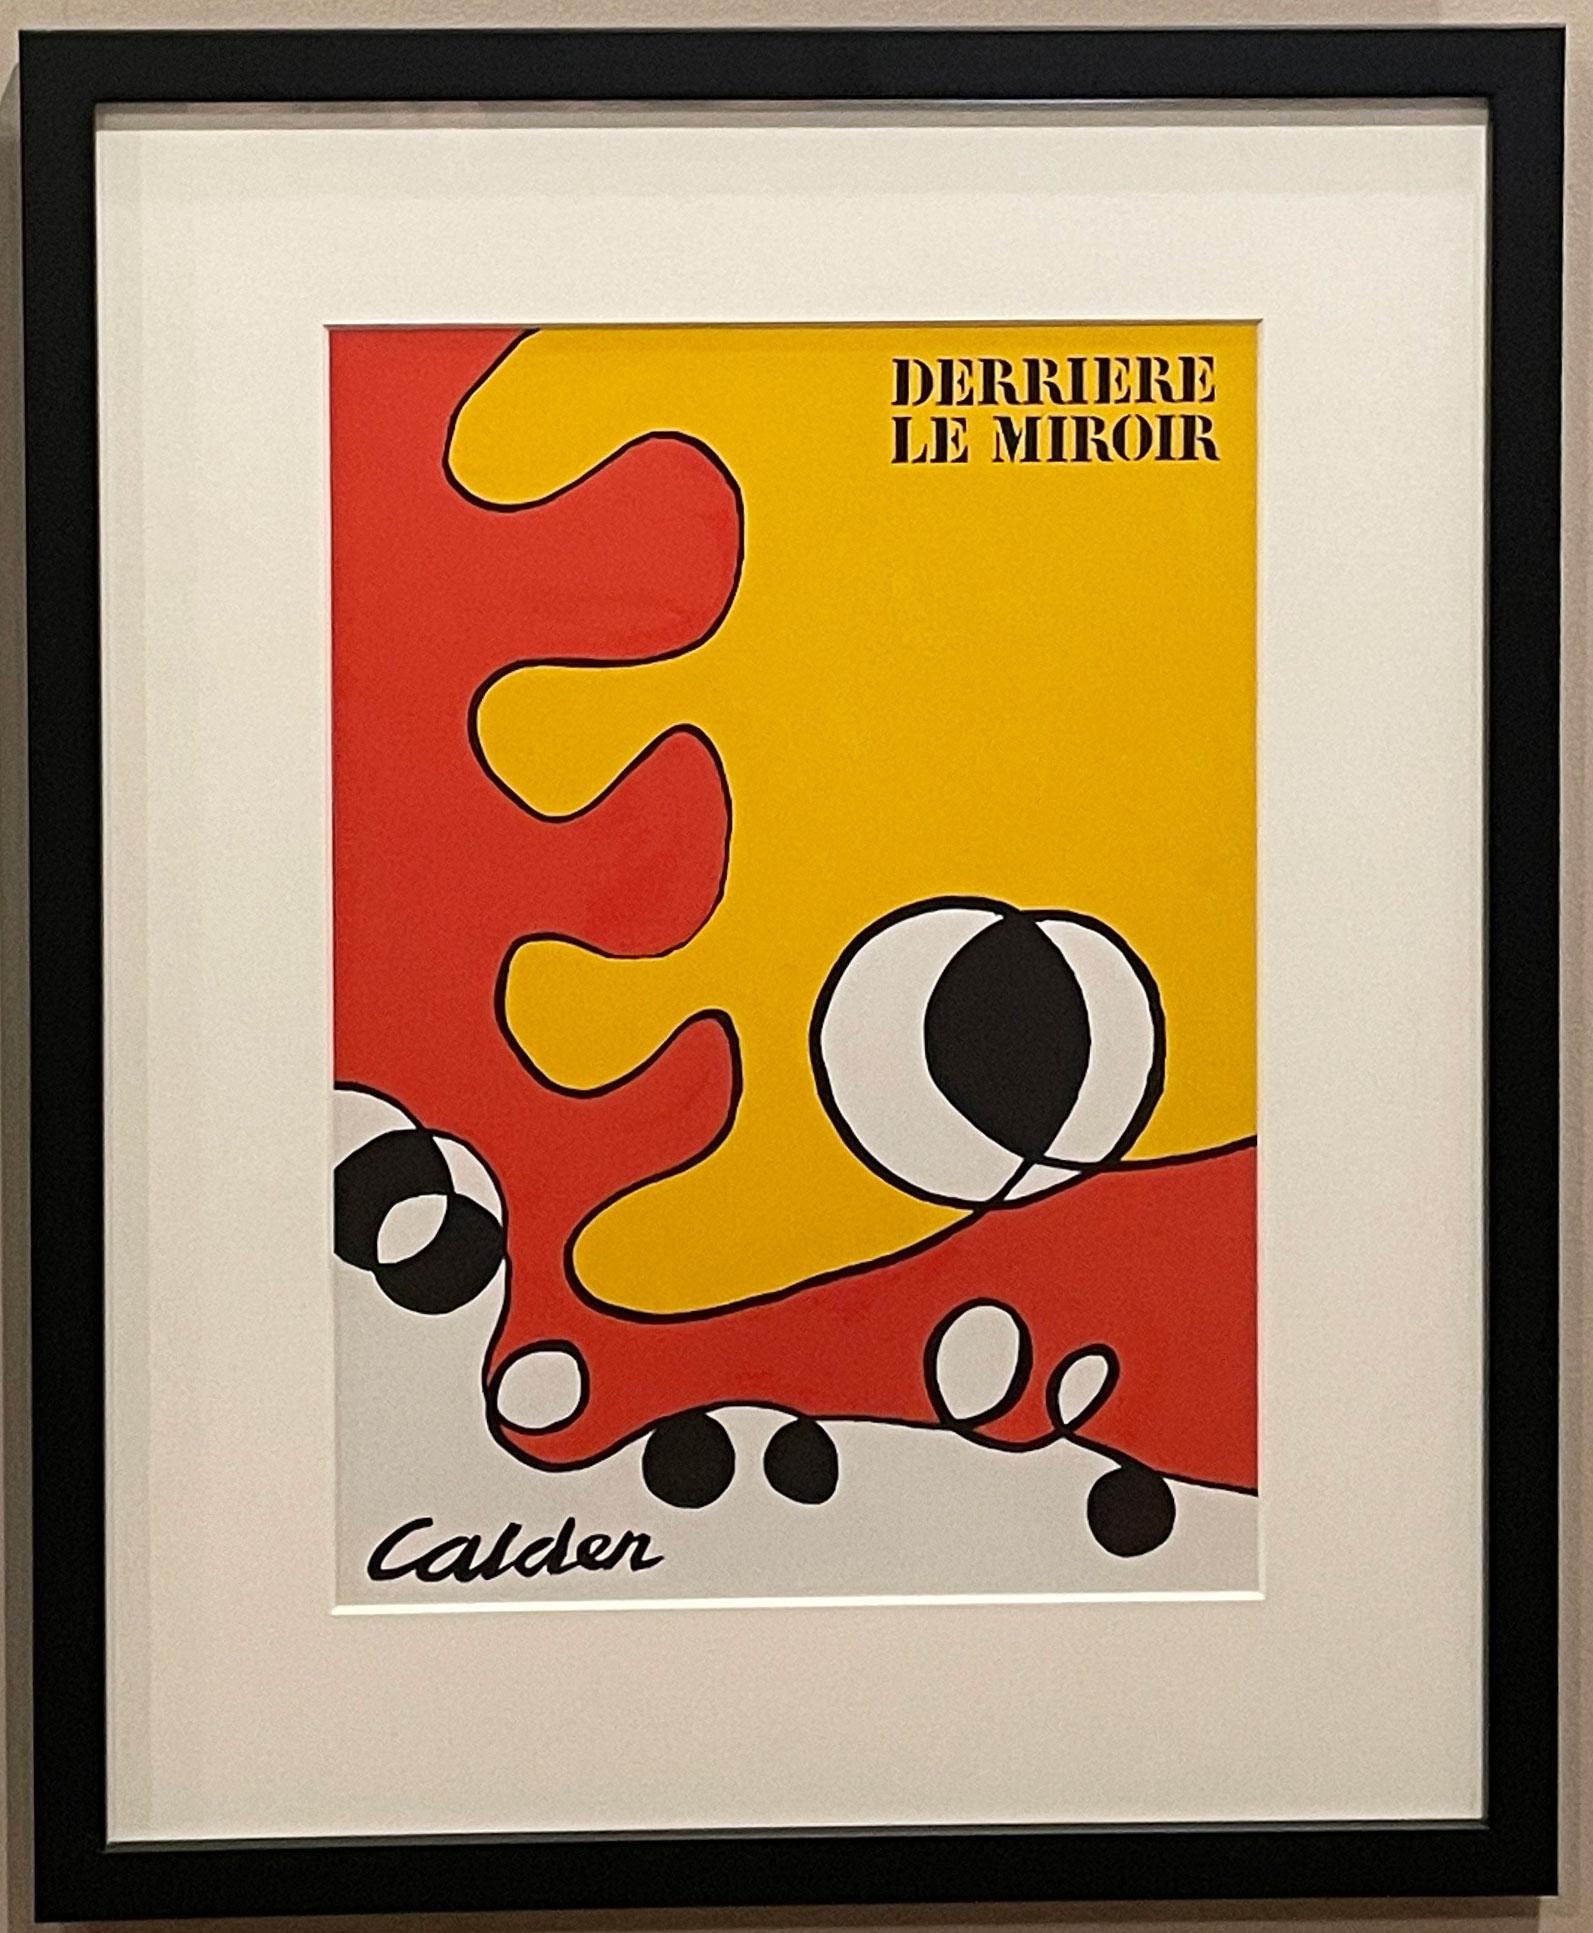 Cover (Derriere le Miroir #173) - Print by Alexander Calder